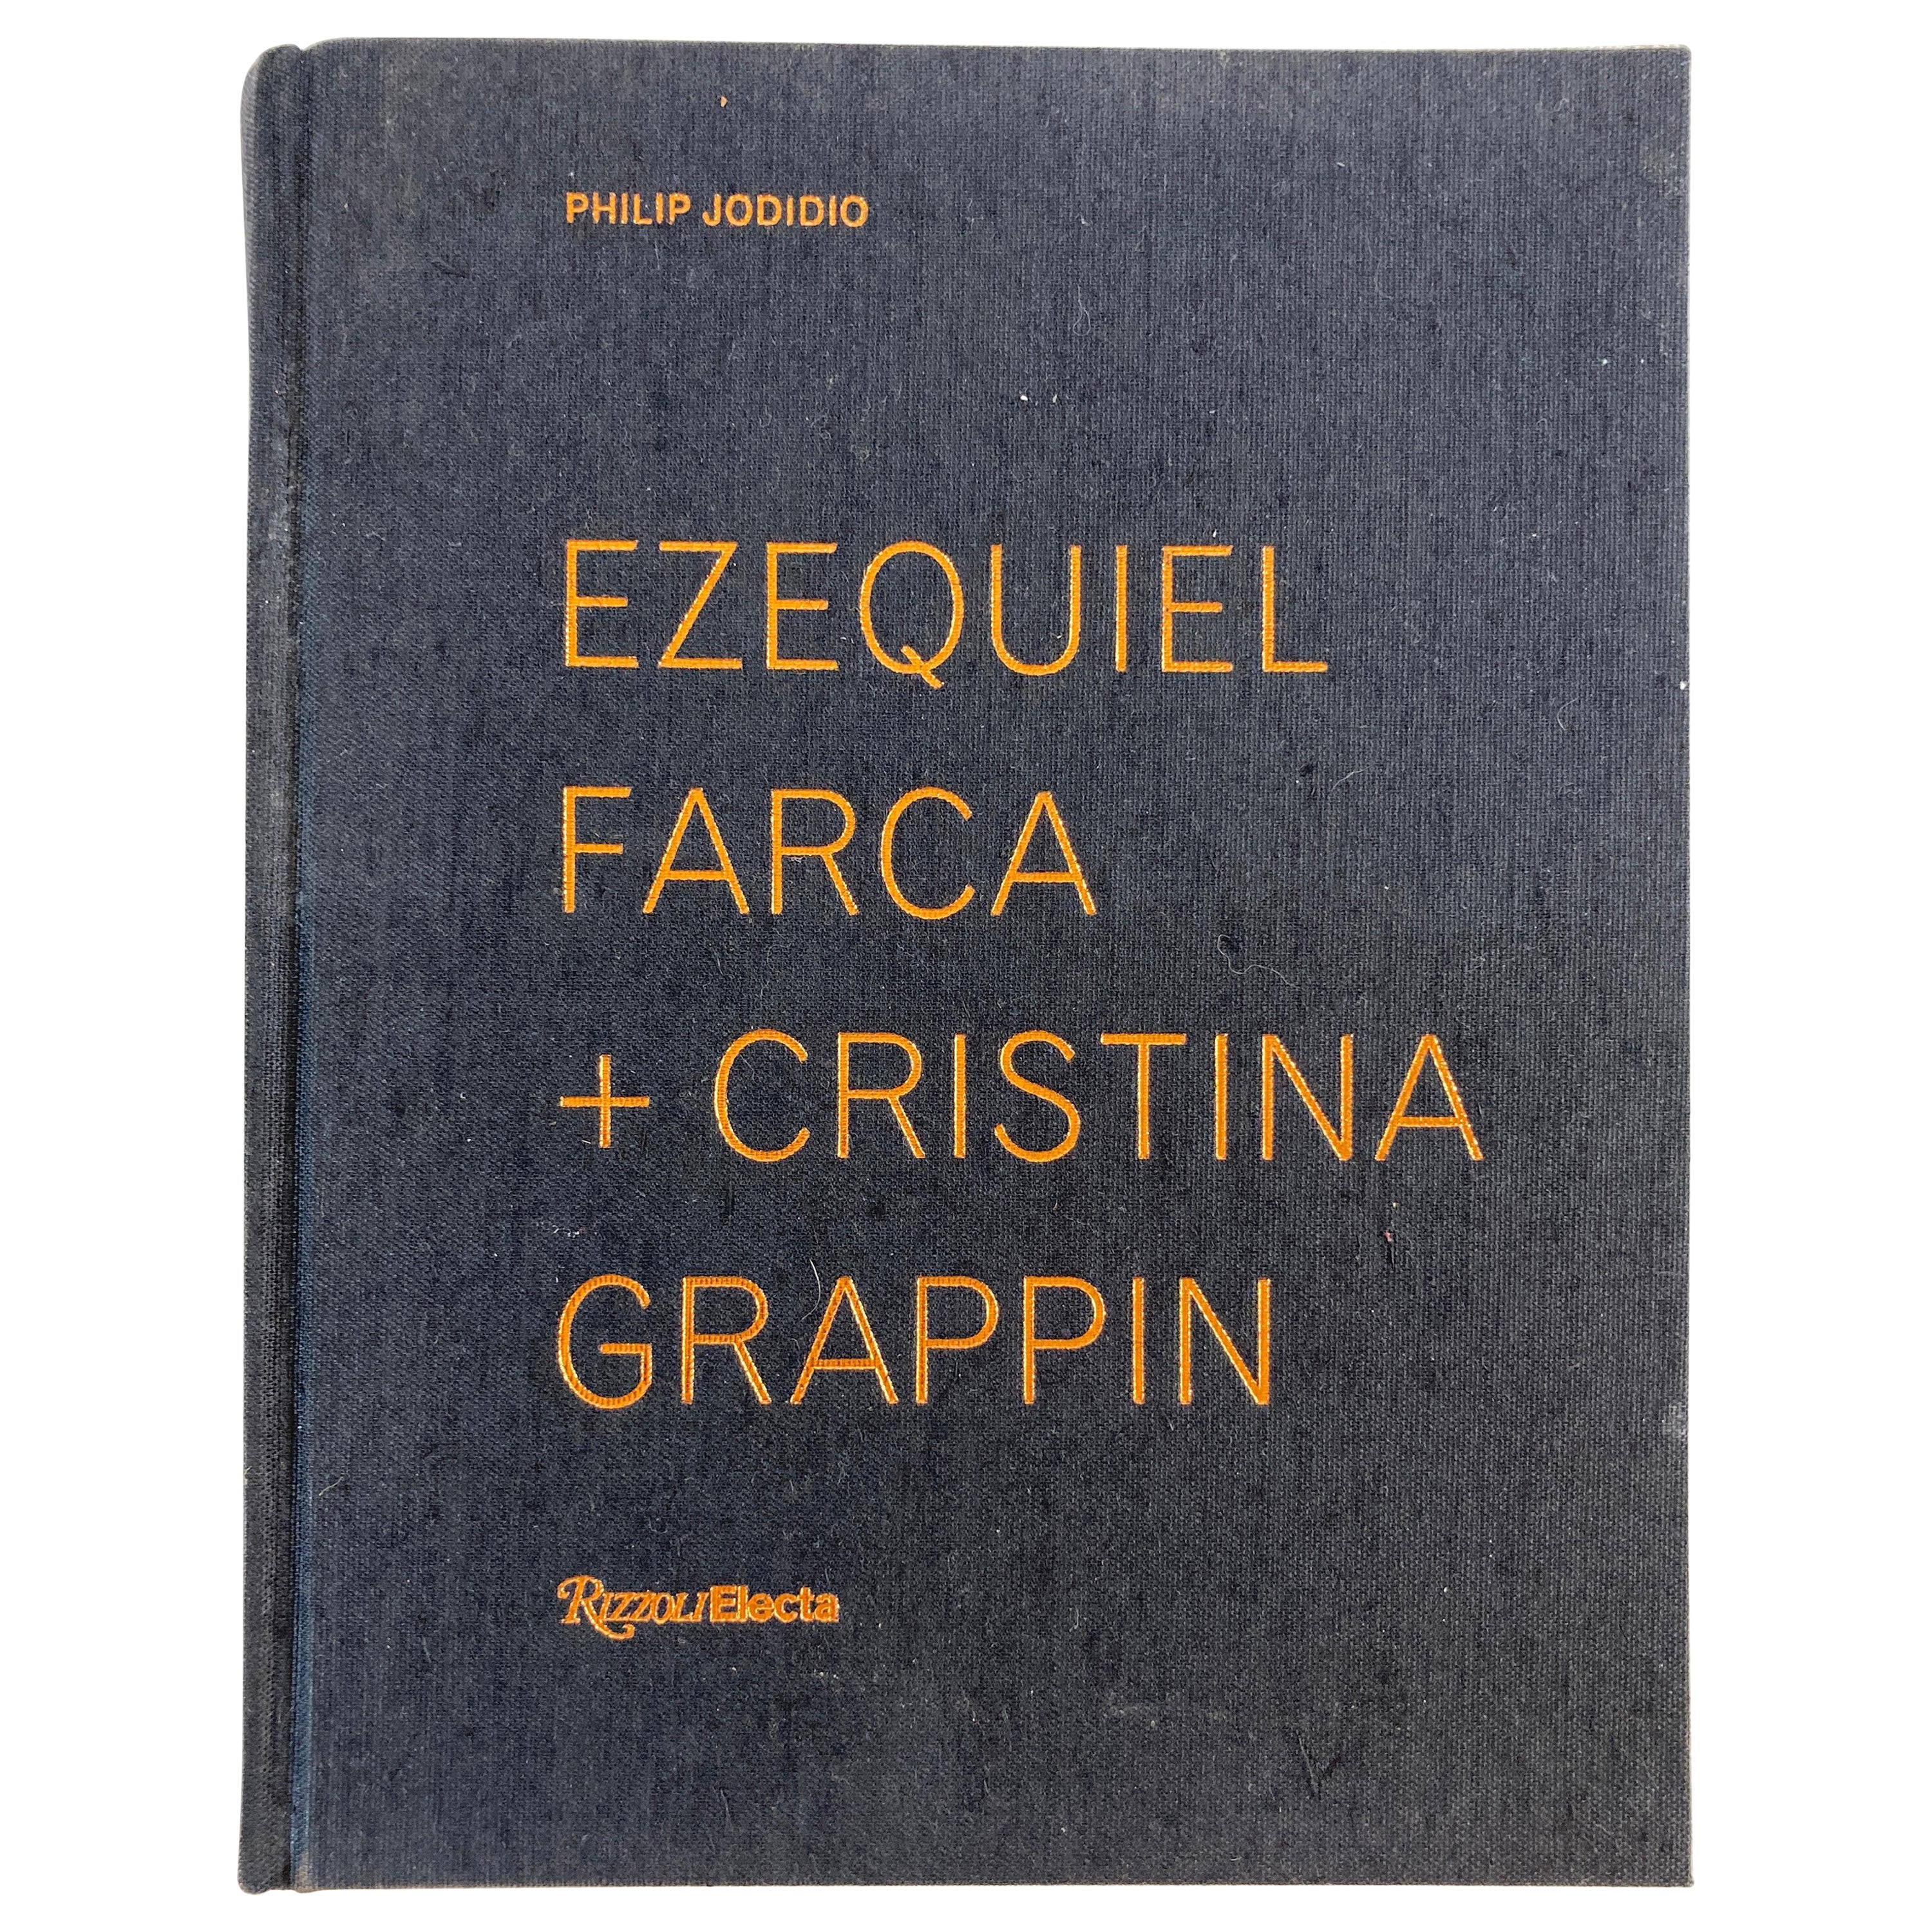 Ezequiel Farca + Cristina Grappin Architecture - Livre de monographie de décoration d'intérieur